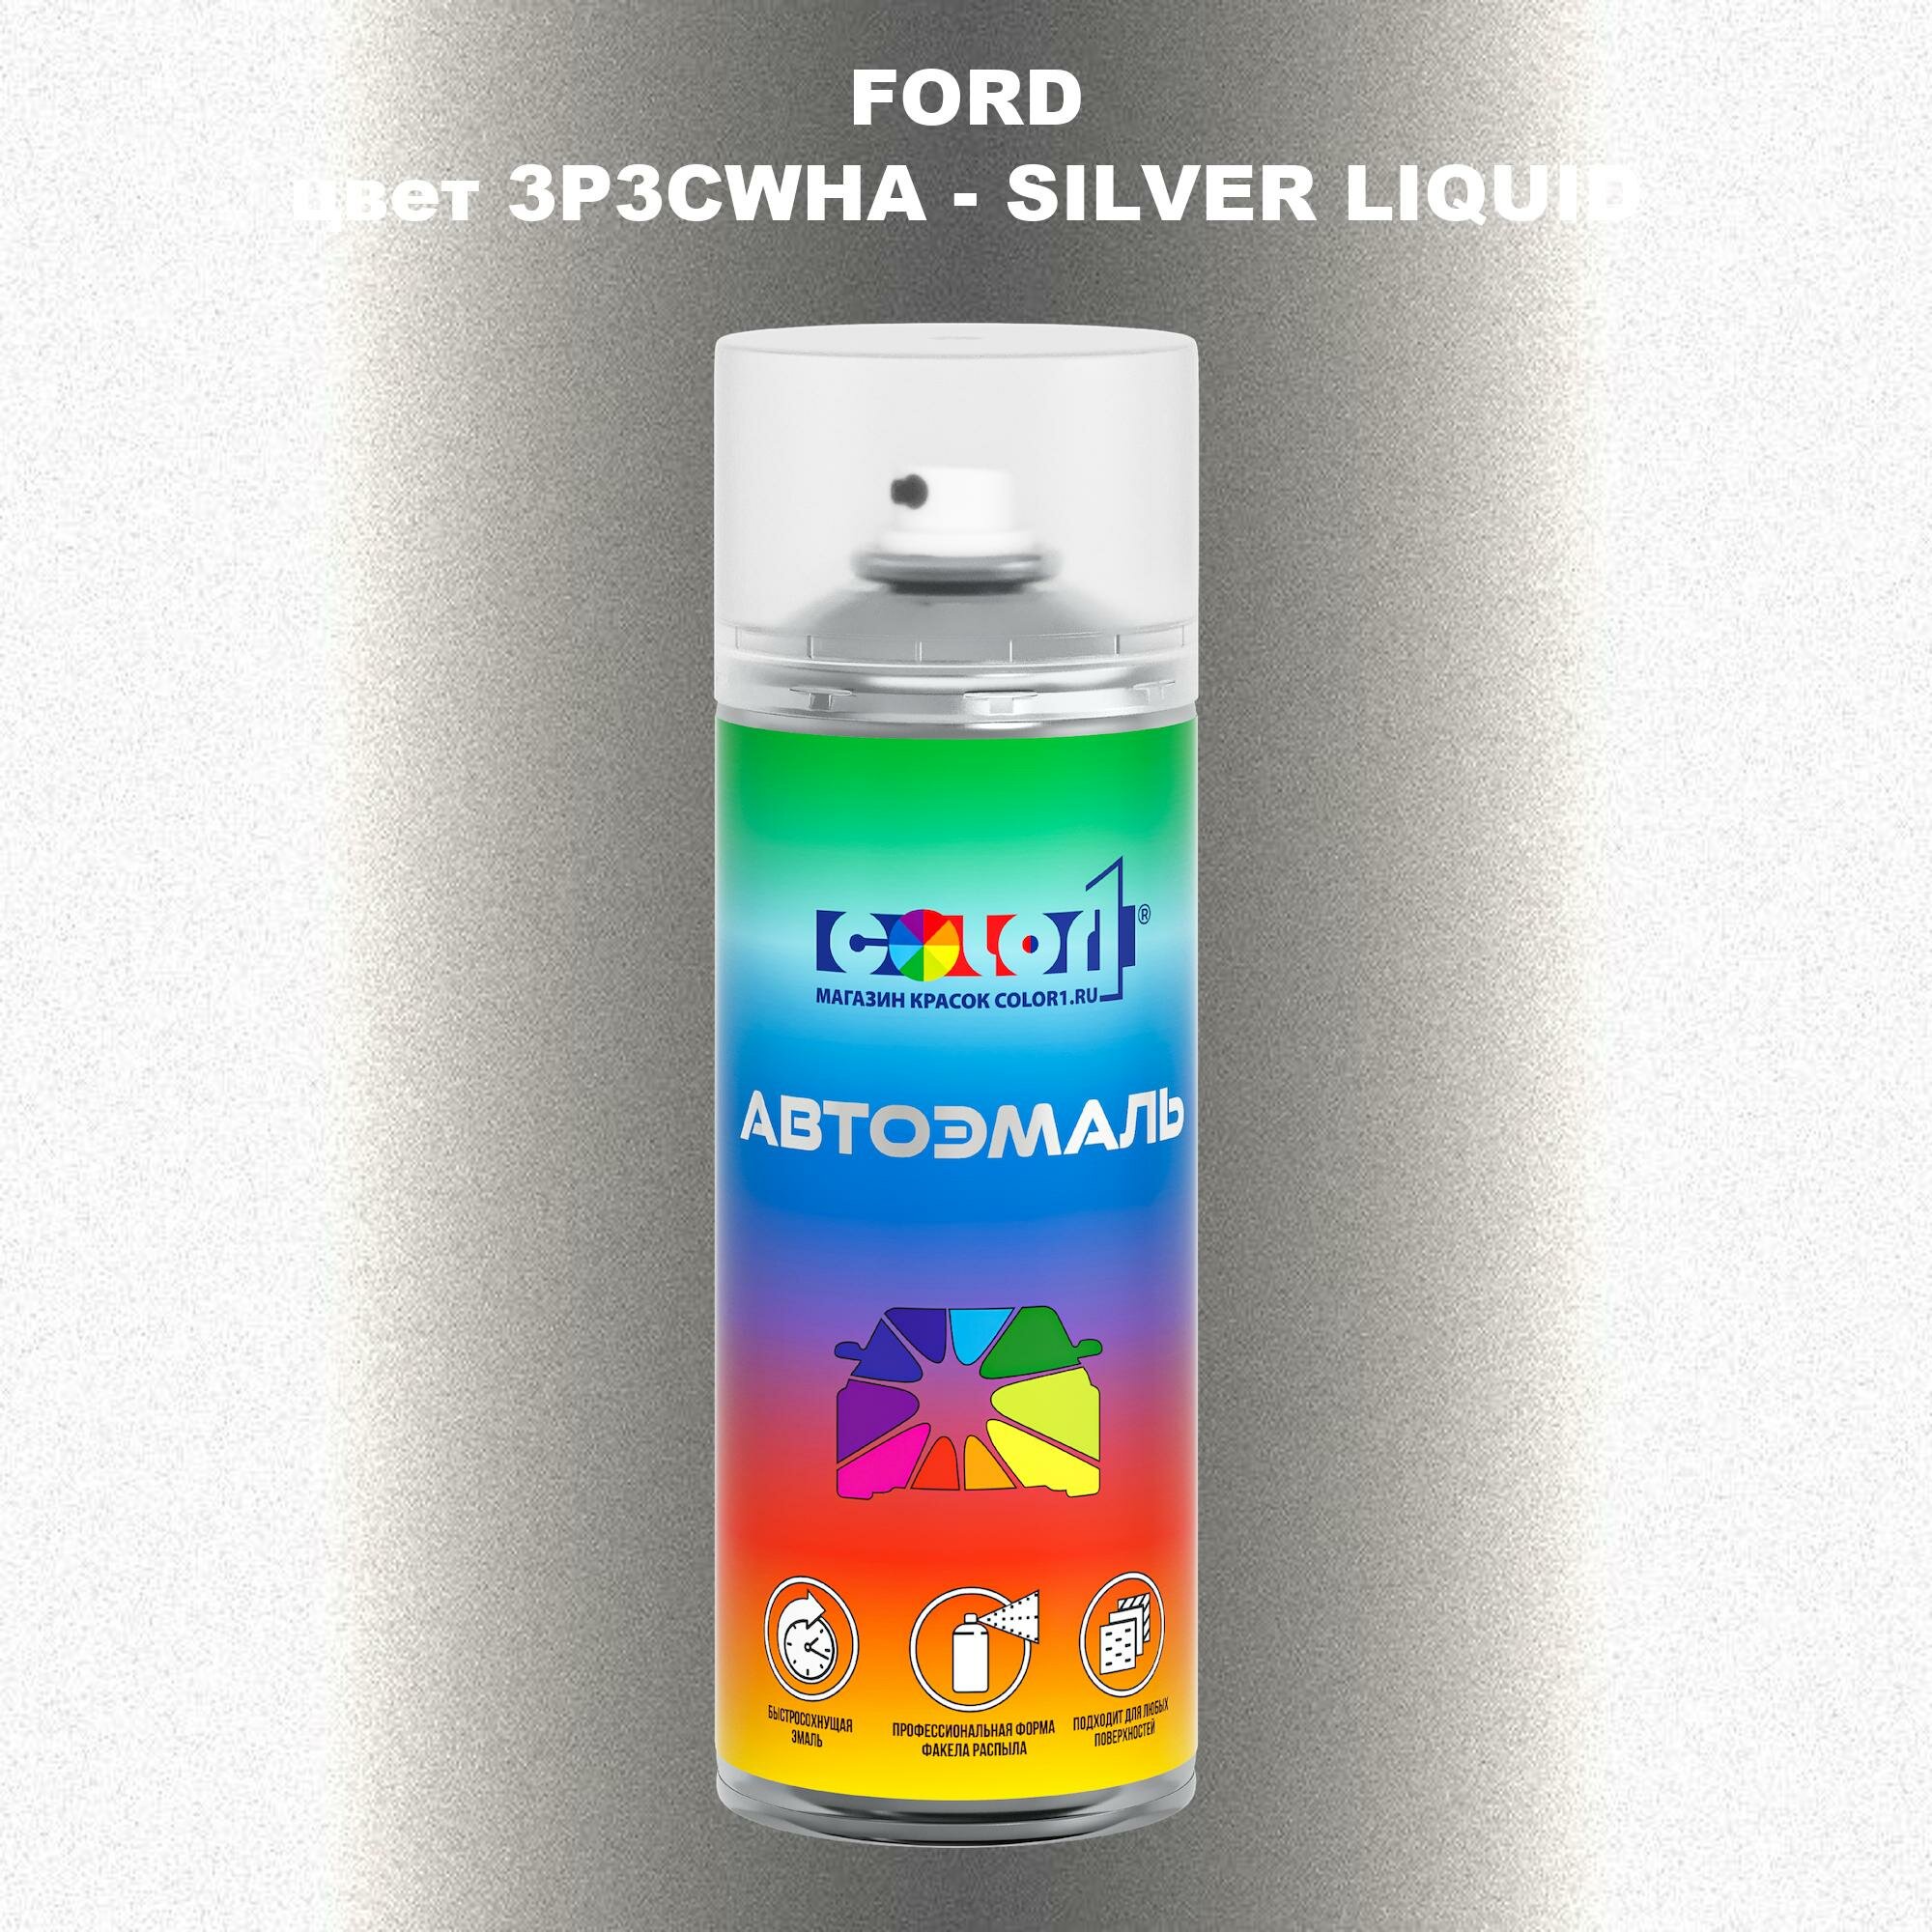 Аэрозольная краска COLOR1 для FORD, цвет 3P3CWHA - SILVER LIQUID